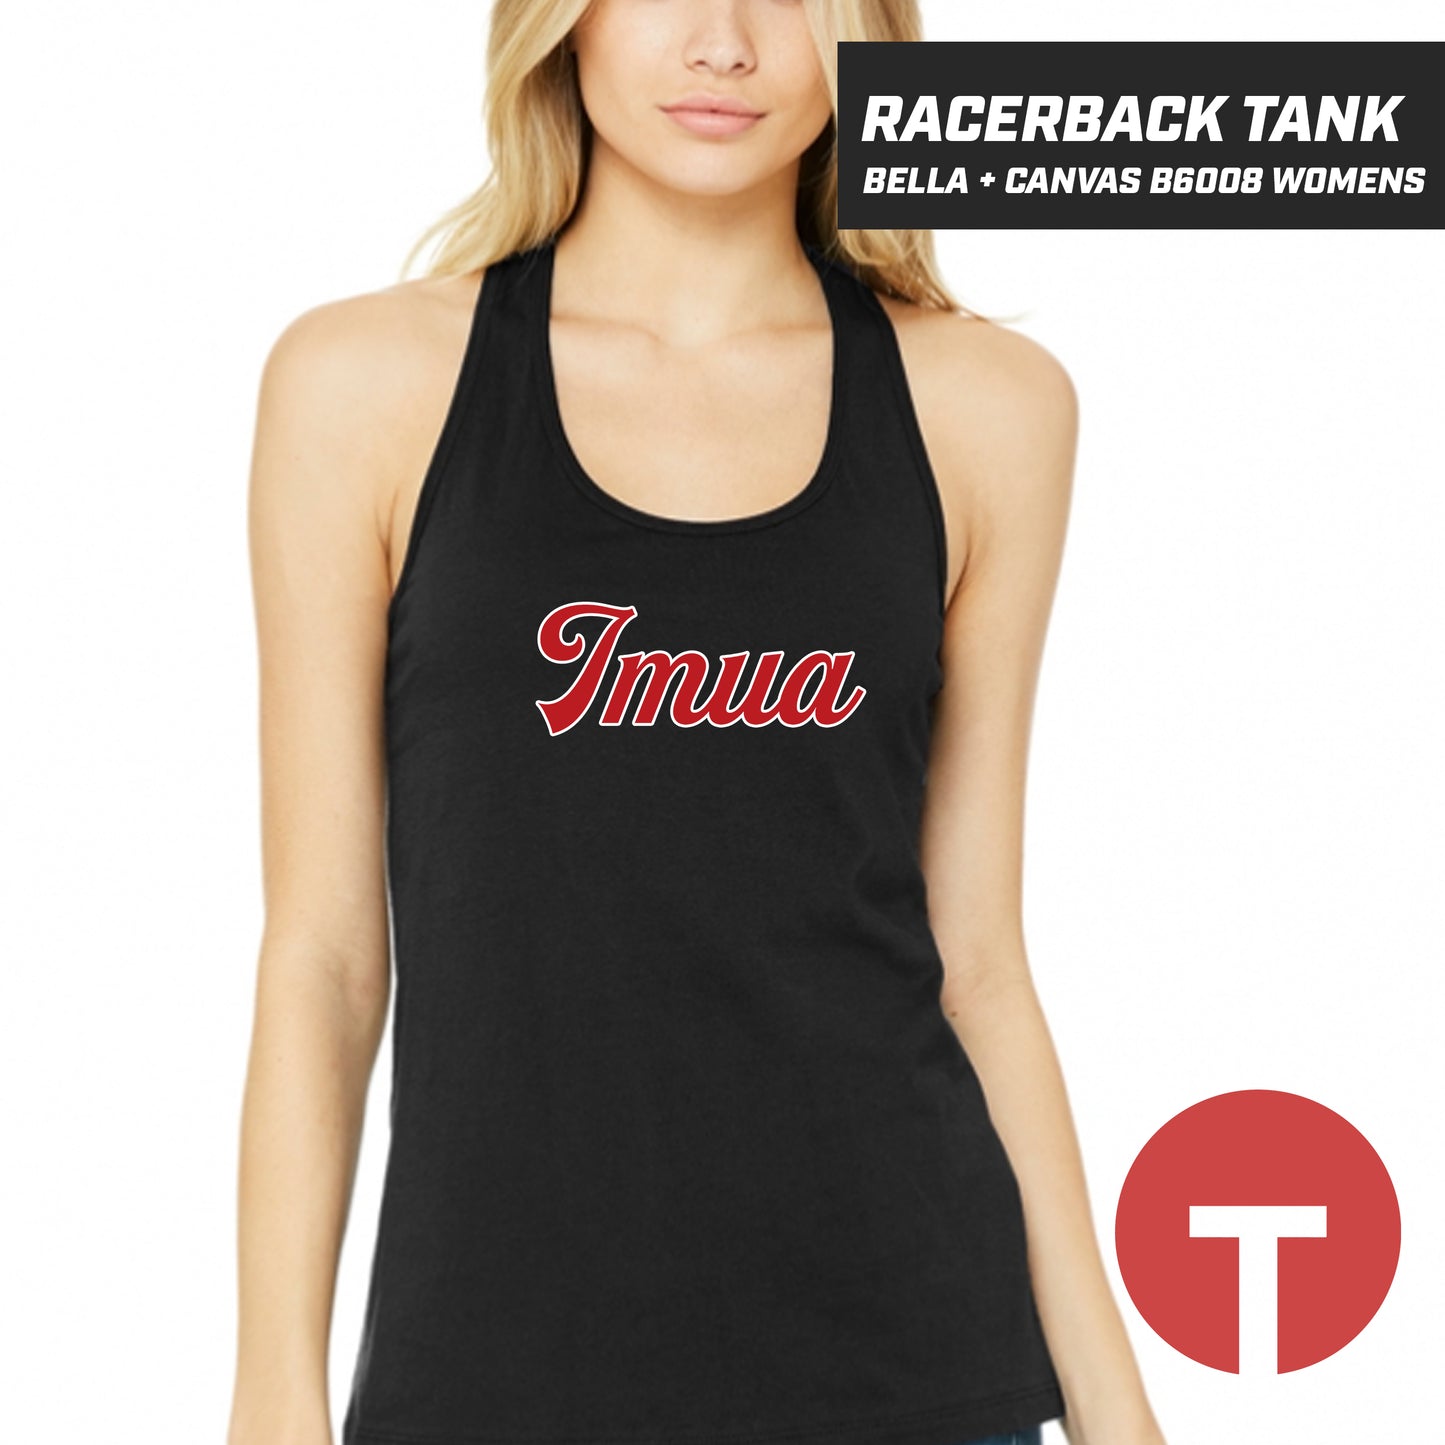 IMUA - Bella + Canvas B6008 Women's Jersey Racerback Tank